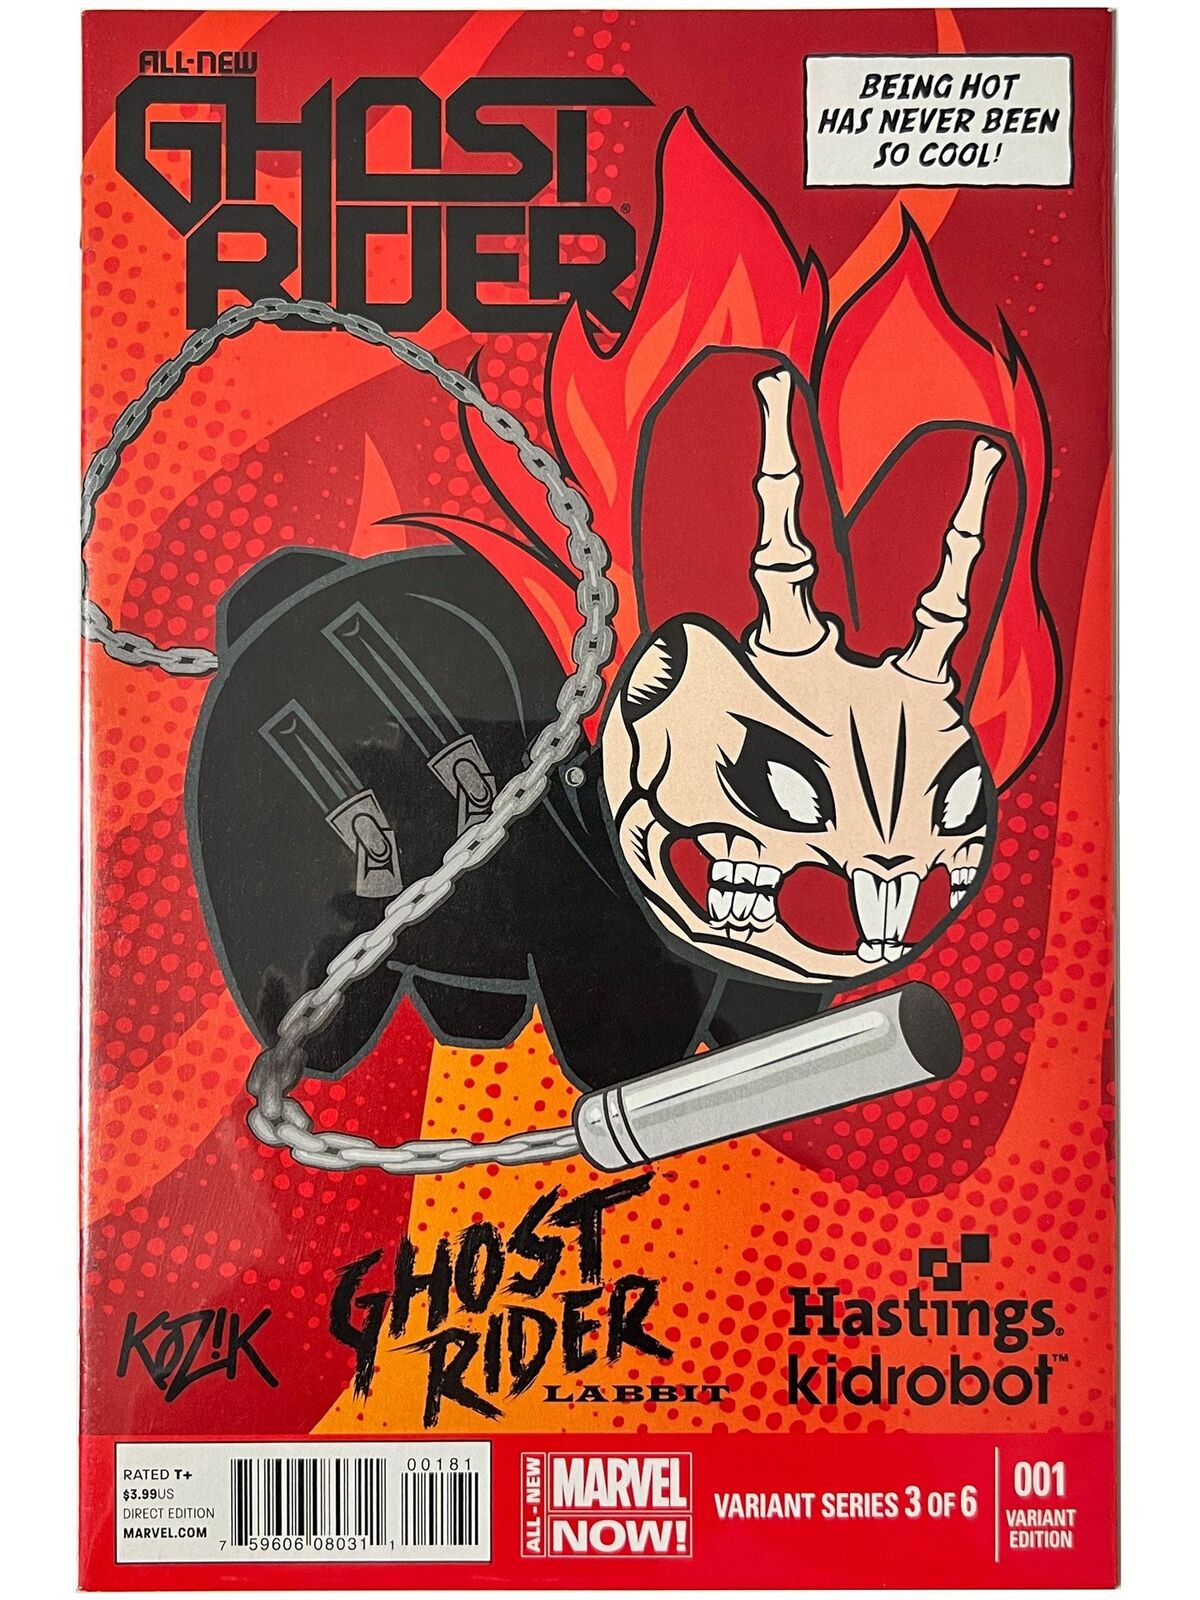 All-New Ghost Rider #1 Hastings Kidrobot Variant 2014 1st App Robbie Reyes NM